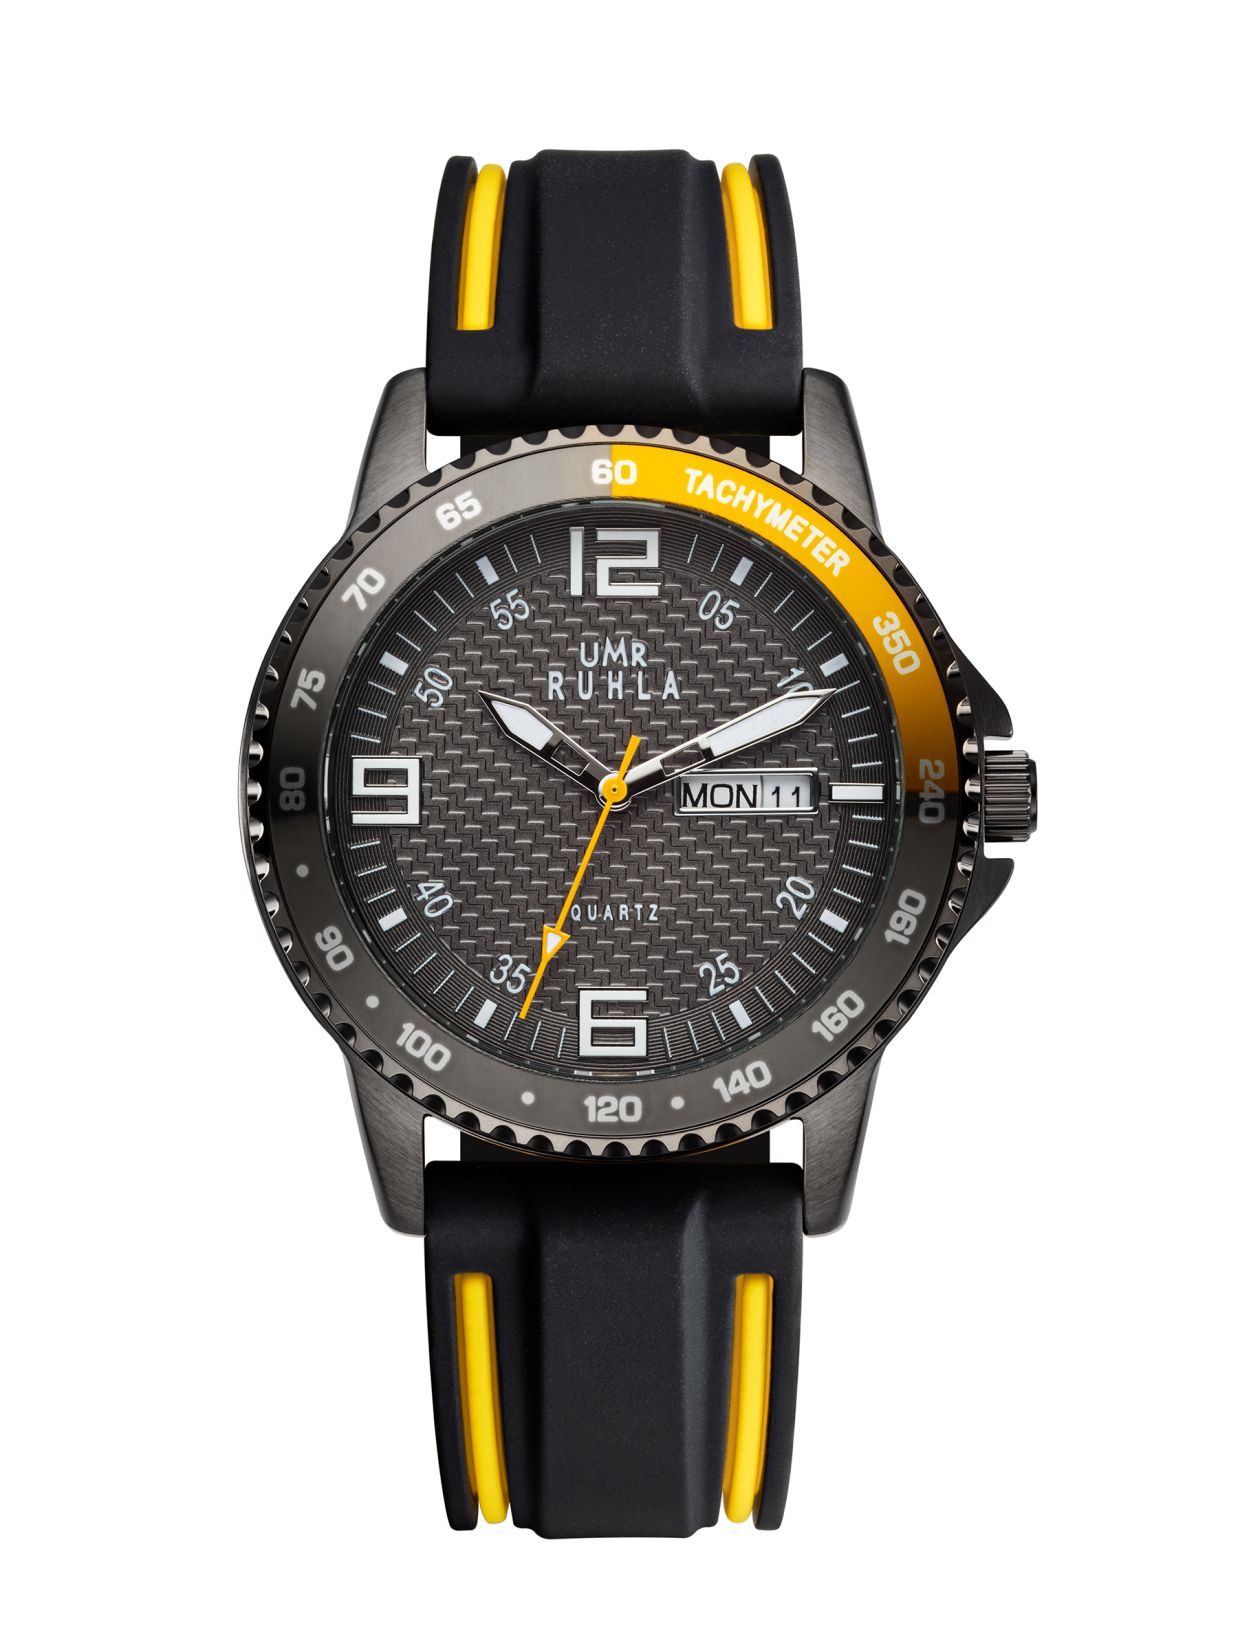 Uhren Manufaktur Ruhla - Armbanduhr Sport - schwarz-gelb